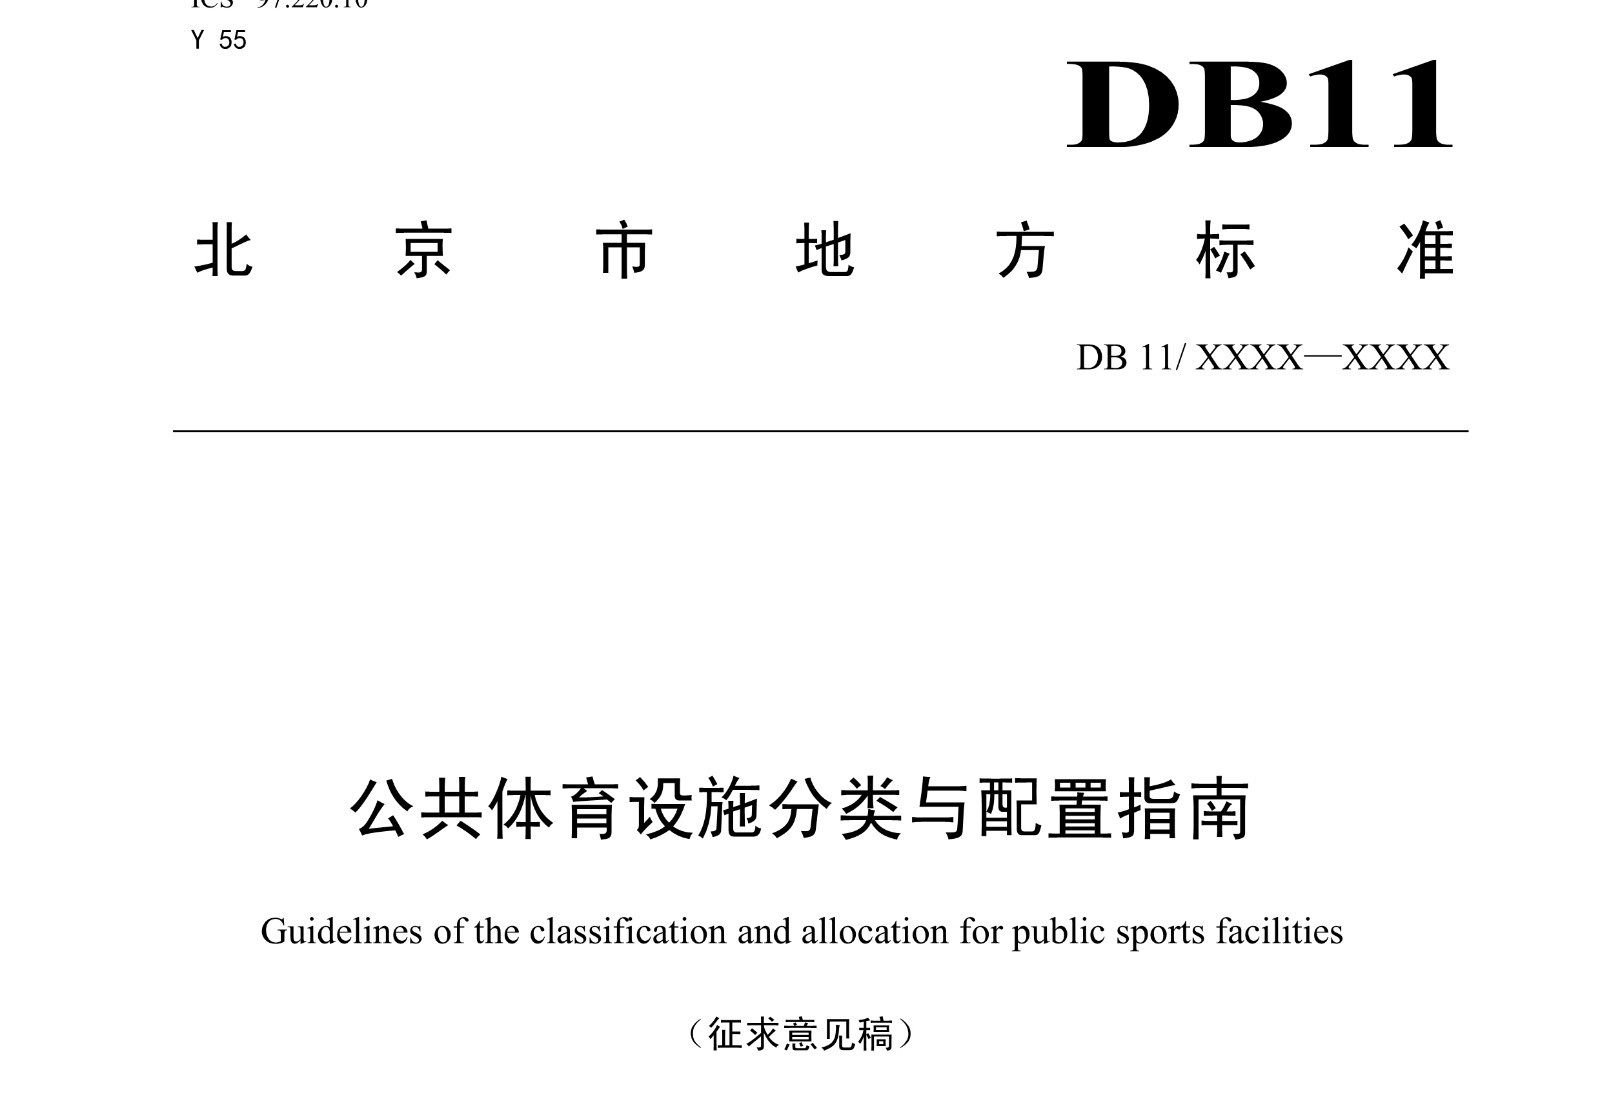 《北京公共体育设施分类与配置指南》公开征集意见